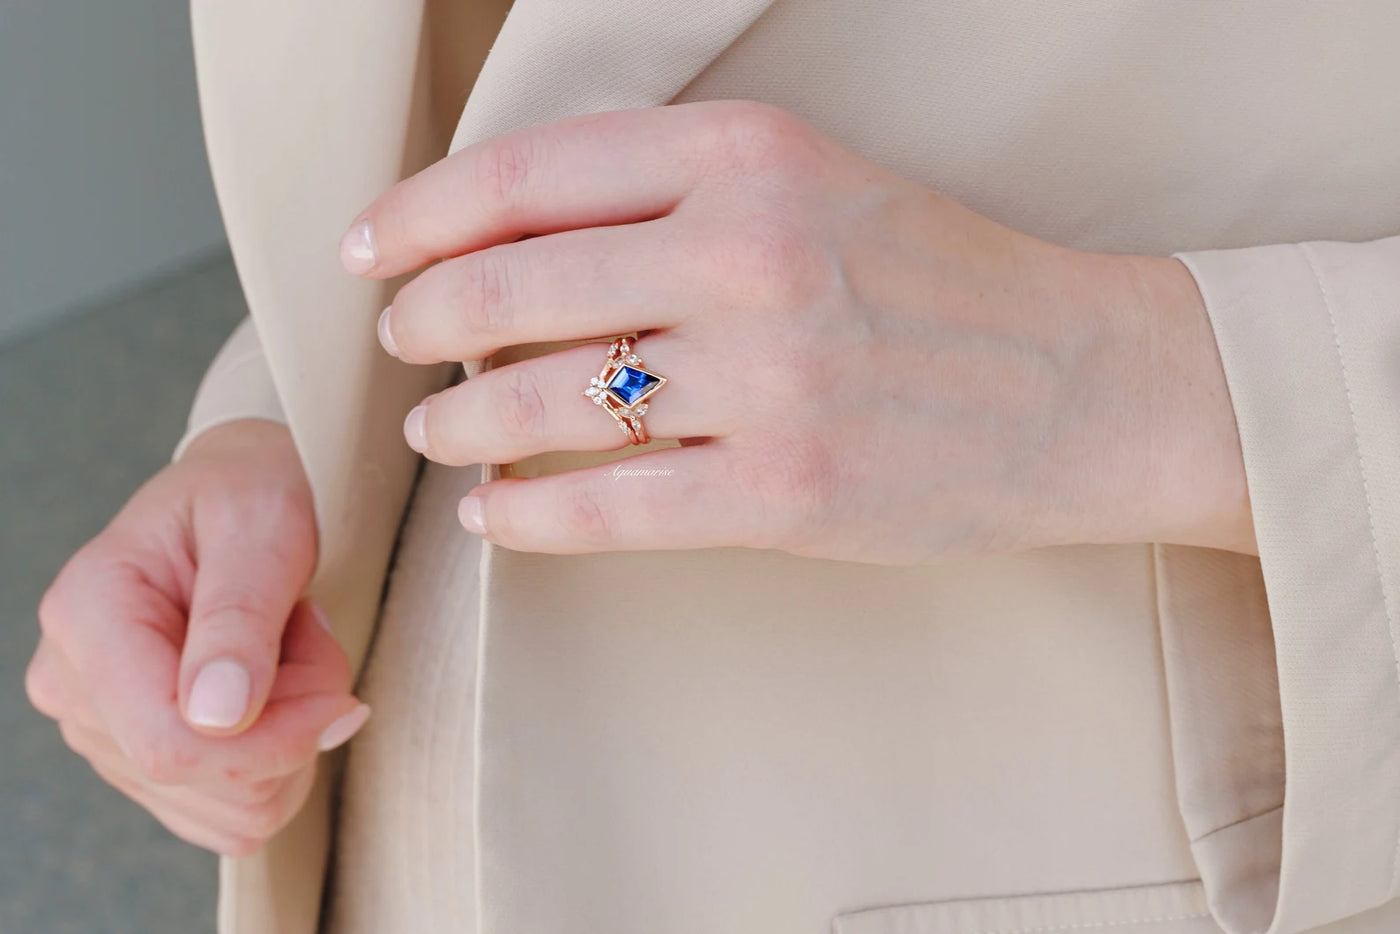 Kite Blue Sapphire Ring Set For Women- 14K Rose Gold Vermeil Blue Gemstone Engagement Ring- Dainty Promise Ring